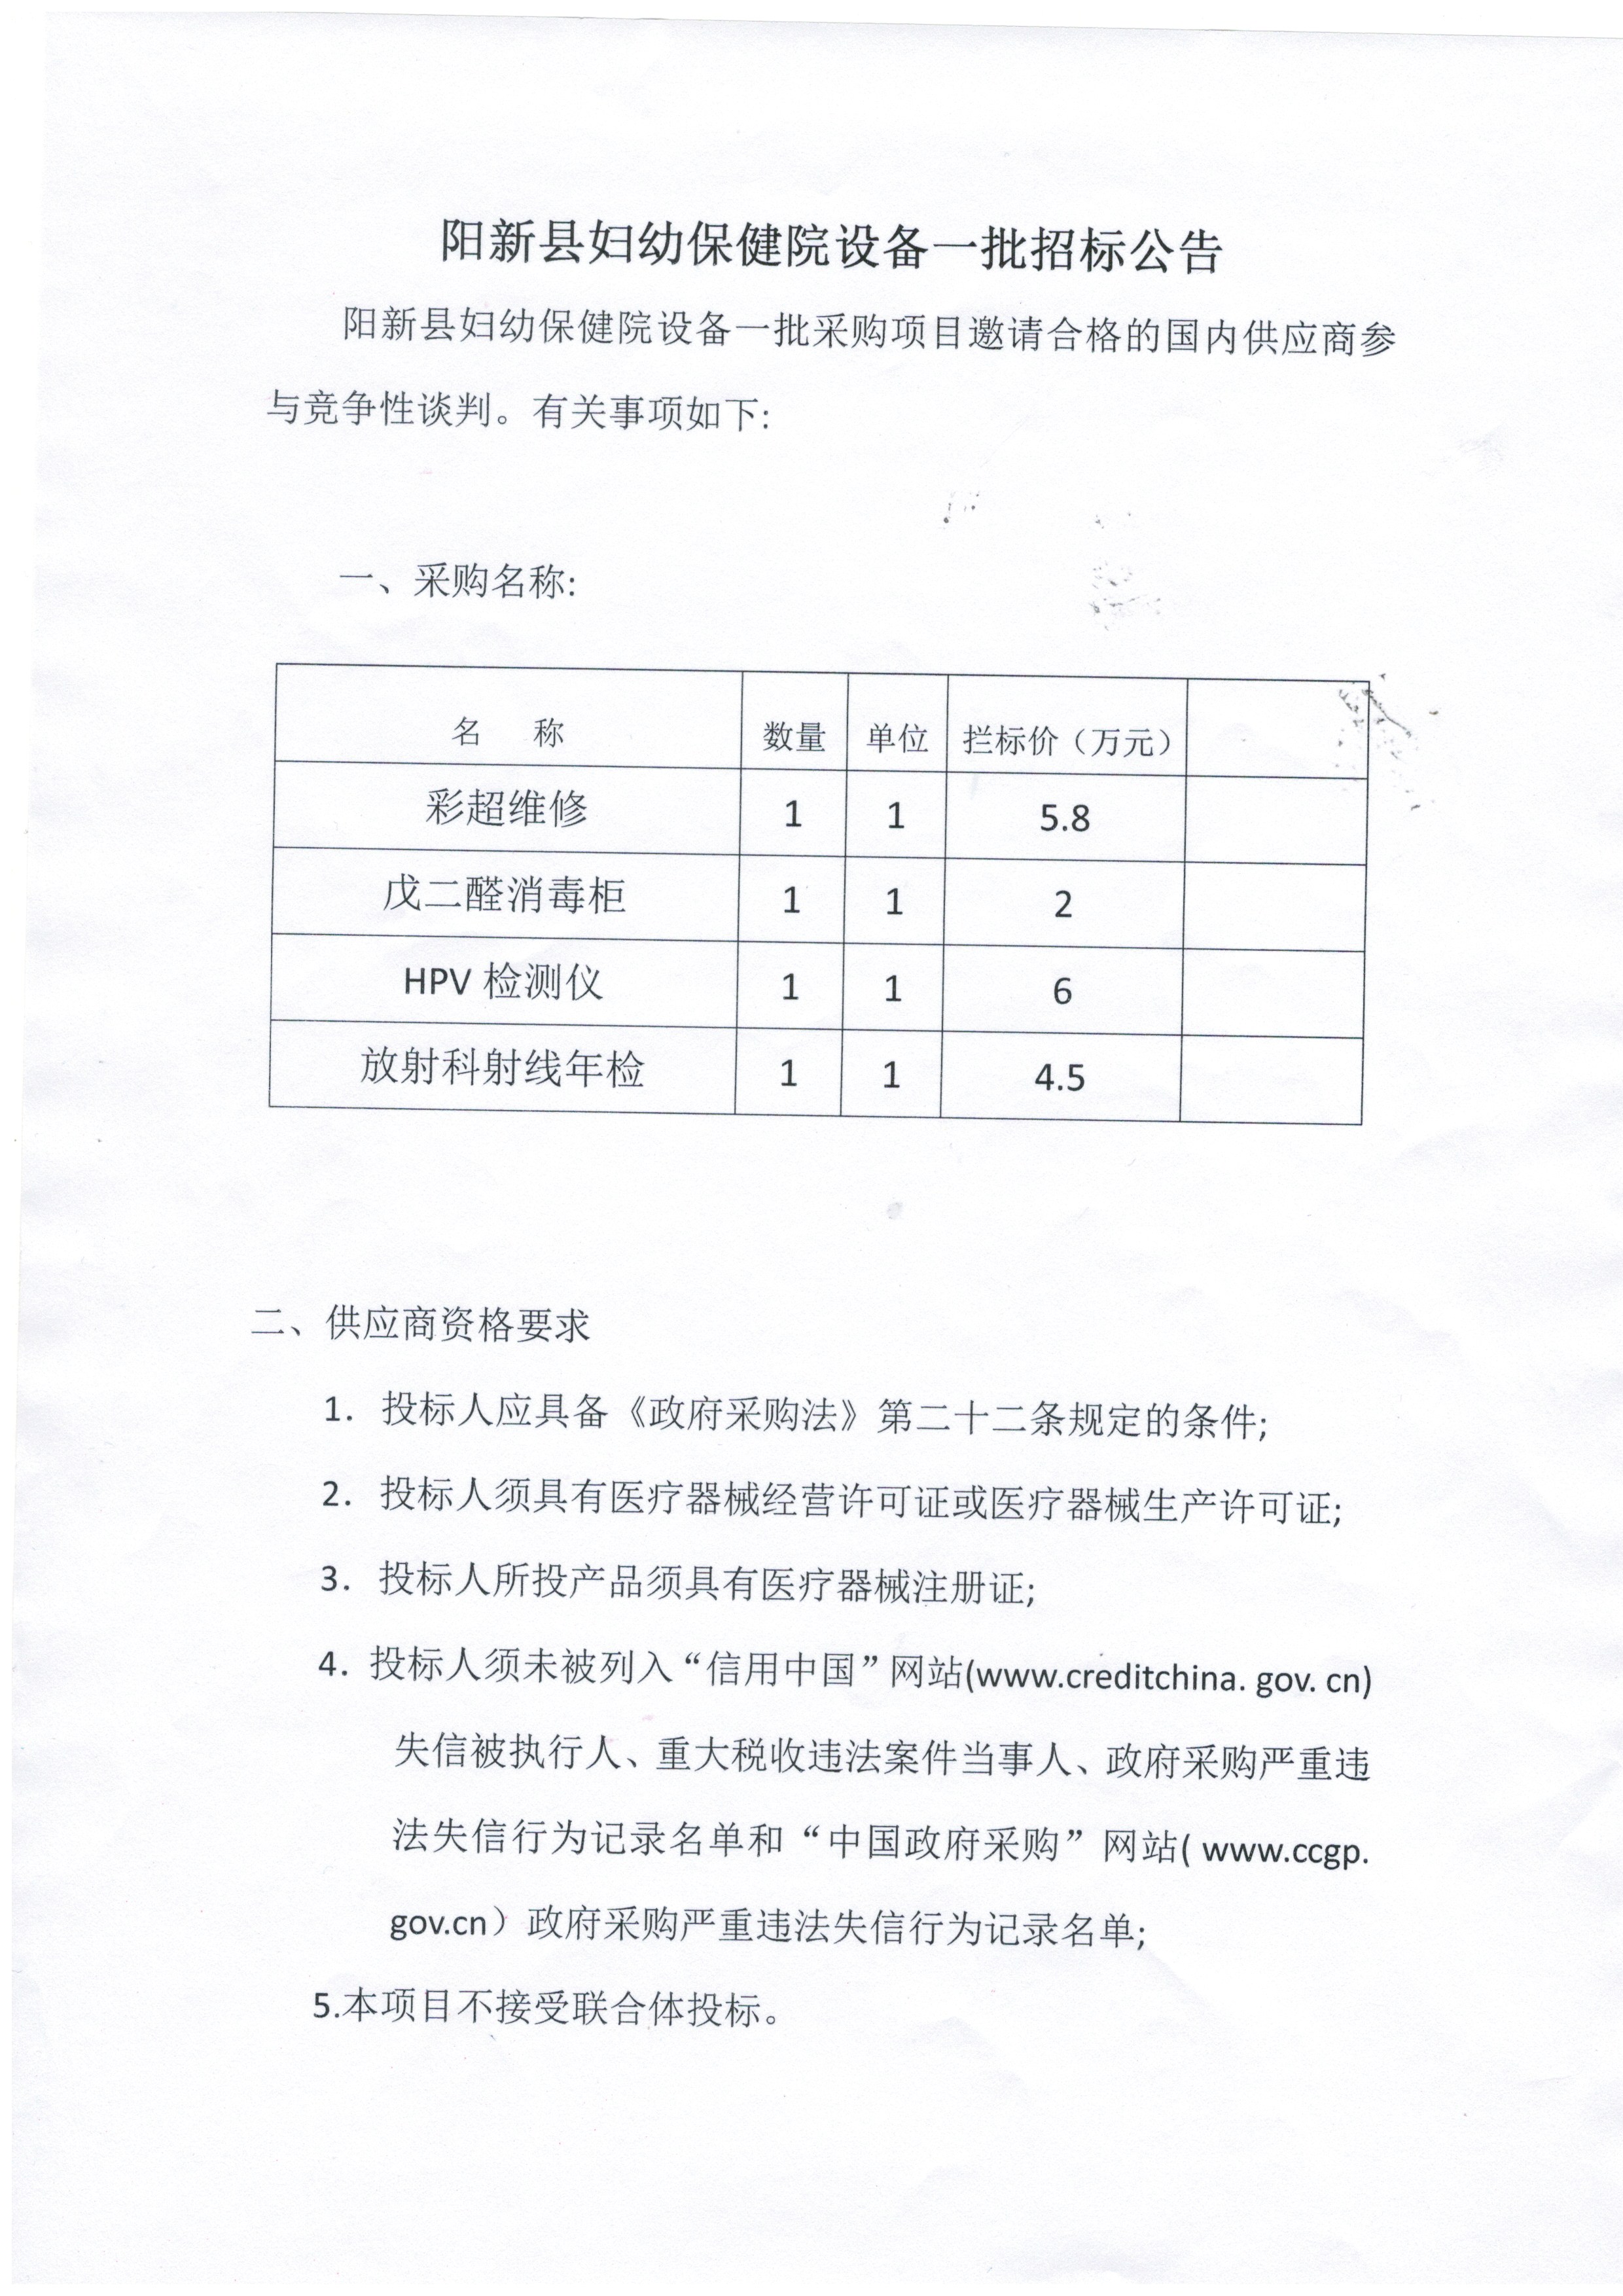 阳新县妇幼保健院设备一批招标公告